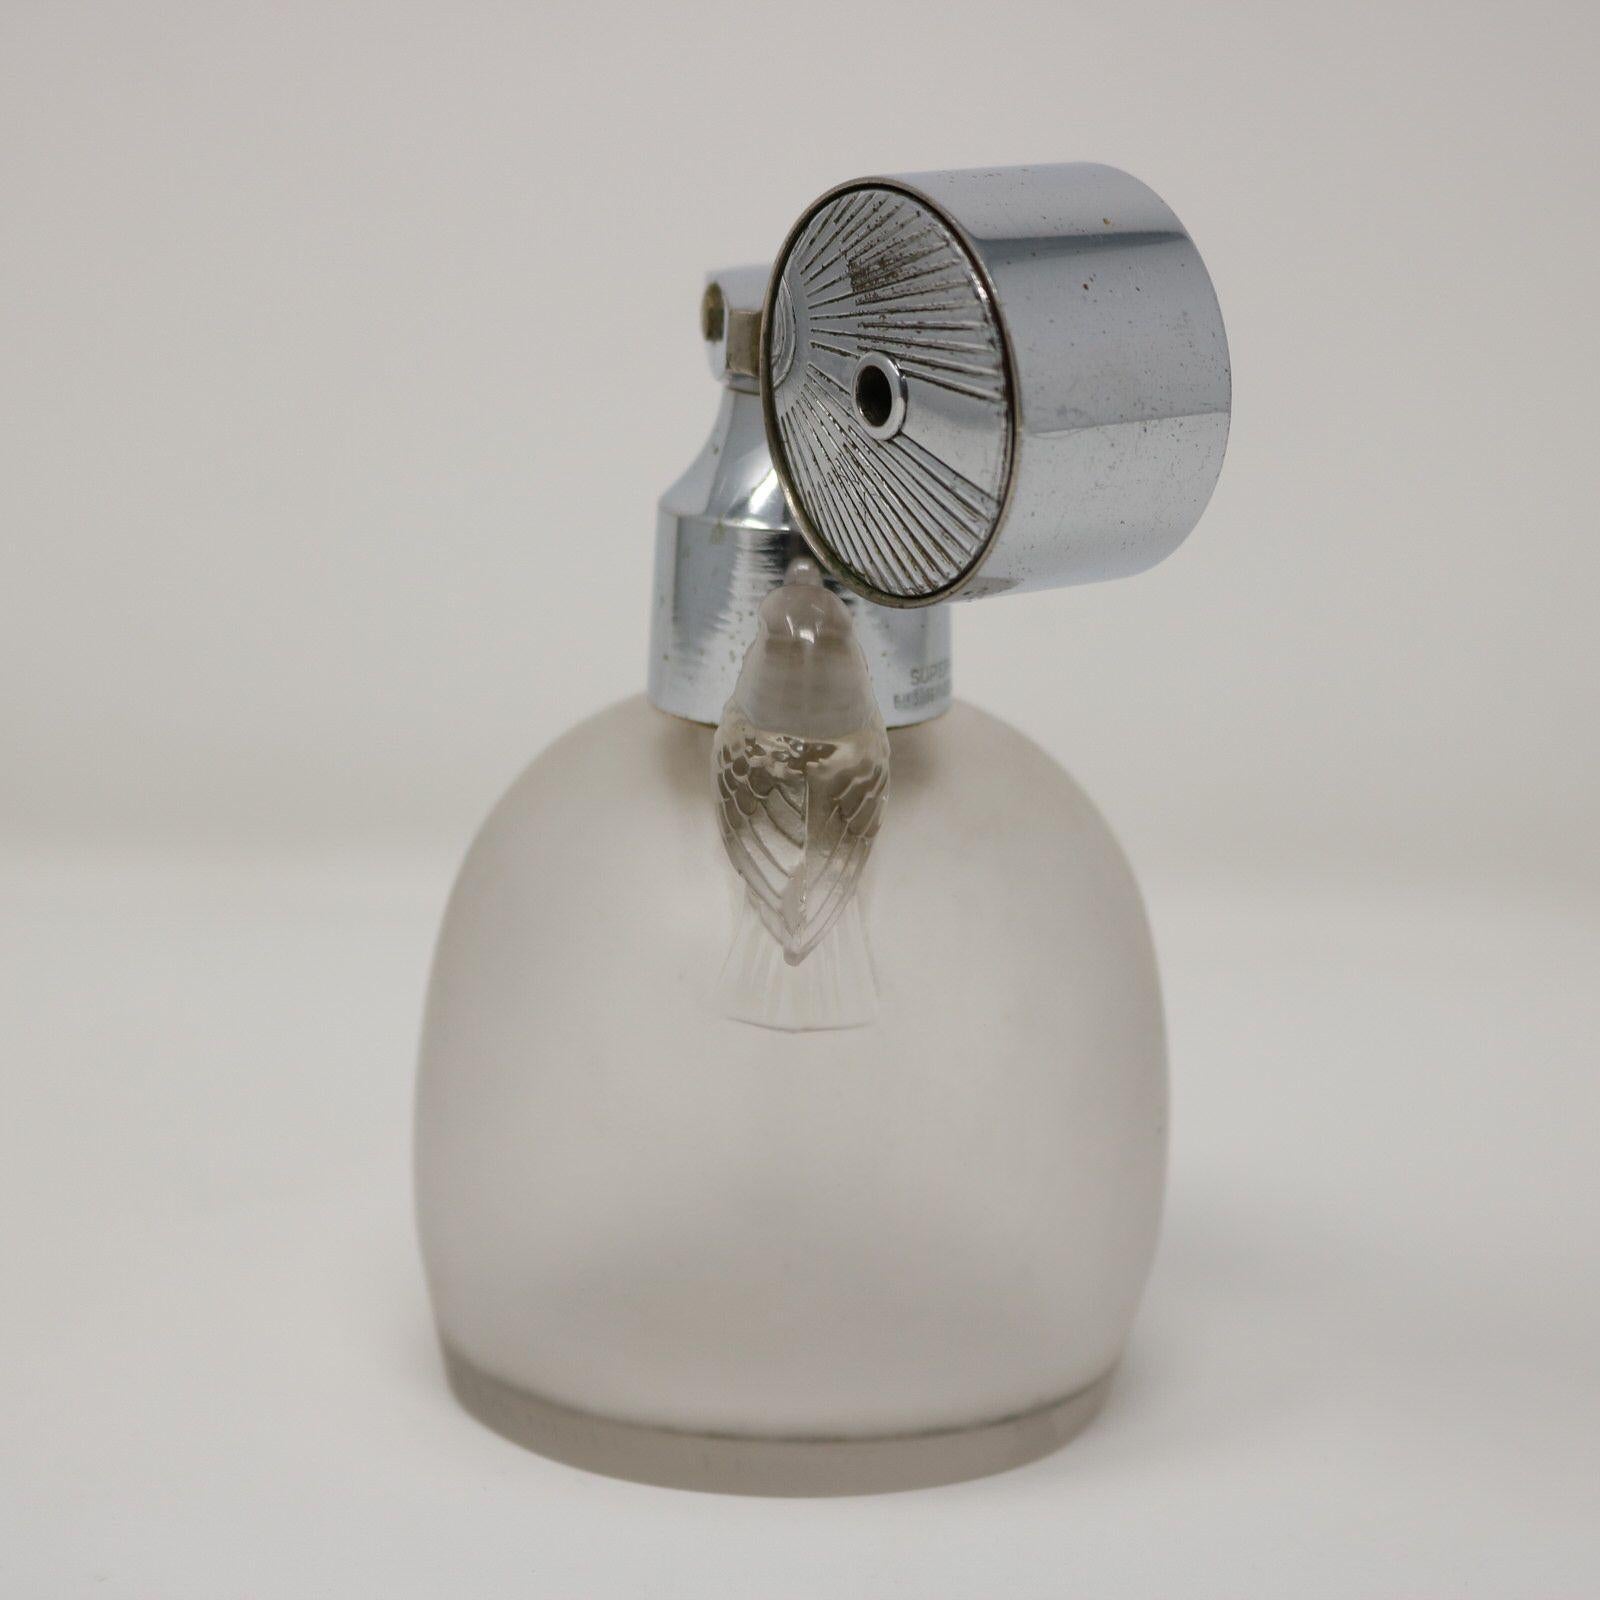 Flacon de parfum 'Marcel Frank Perruches' en verre dépoli de René Lalique avec vaporisateur. Ce motif représente deux oiseaux, assis de part et d'autre du goulot de la bouteille. Marque du fabricant, 'R LALIQUE FRANCE', autour de la base. Référence